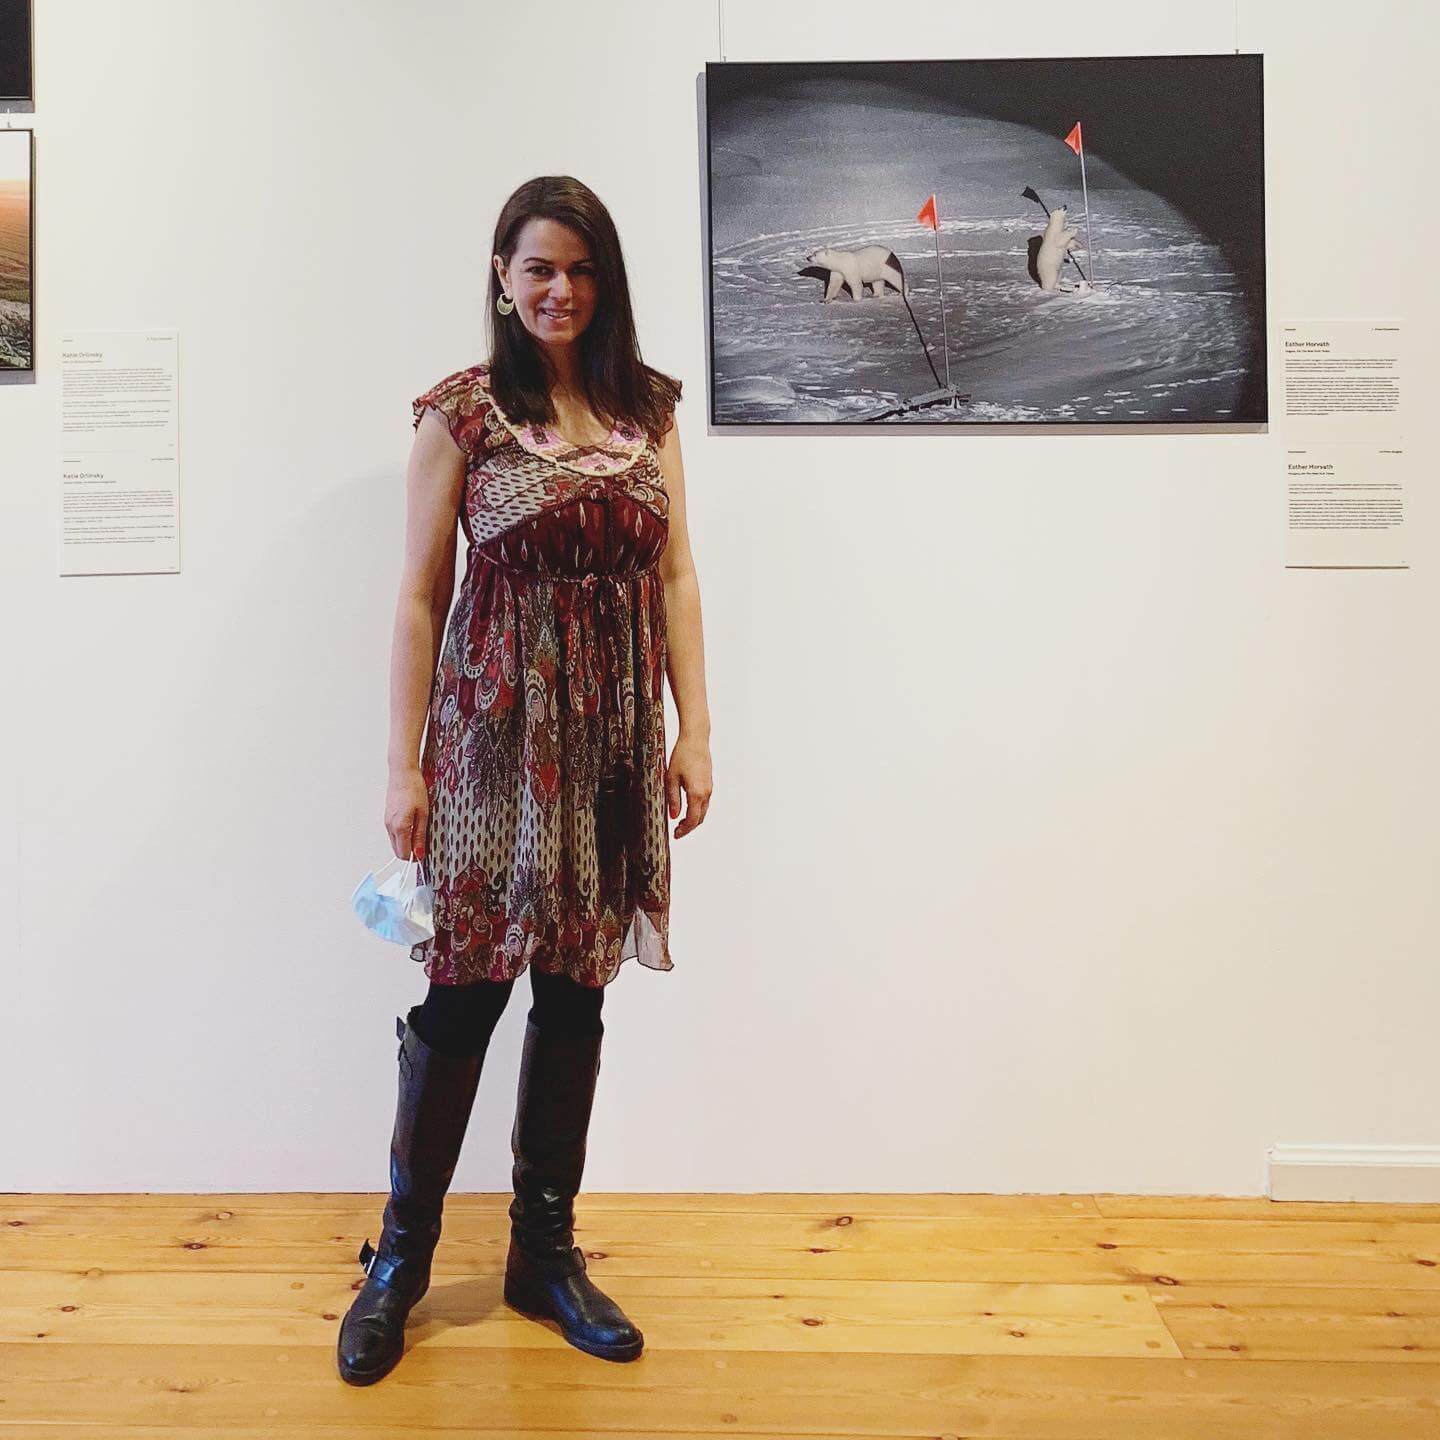 Hoher Besuch am letzten Ausstellungstag: Die mit einem World Press Photo Award ausgezeichnete Fotografin Esther Horvath zeigte sich vor ihrem preisgekrönten Bild. @esther_horvath @mediavanti